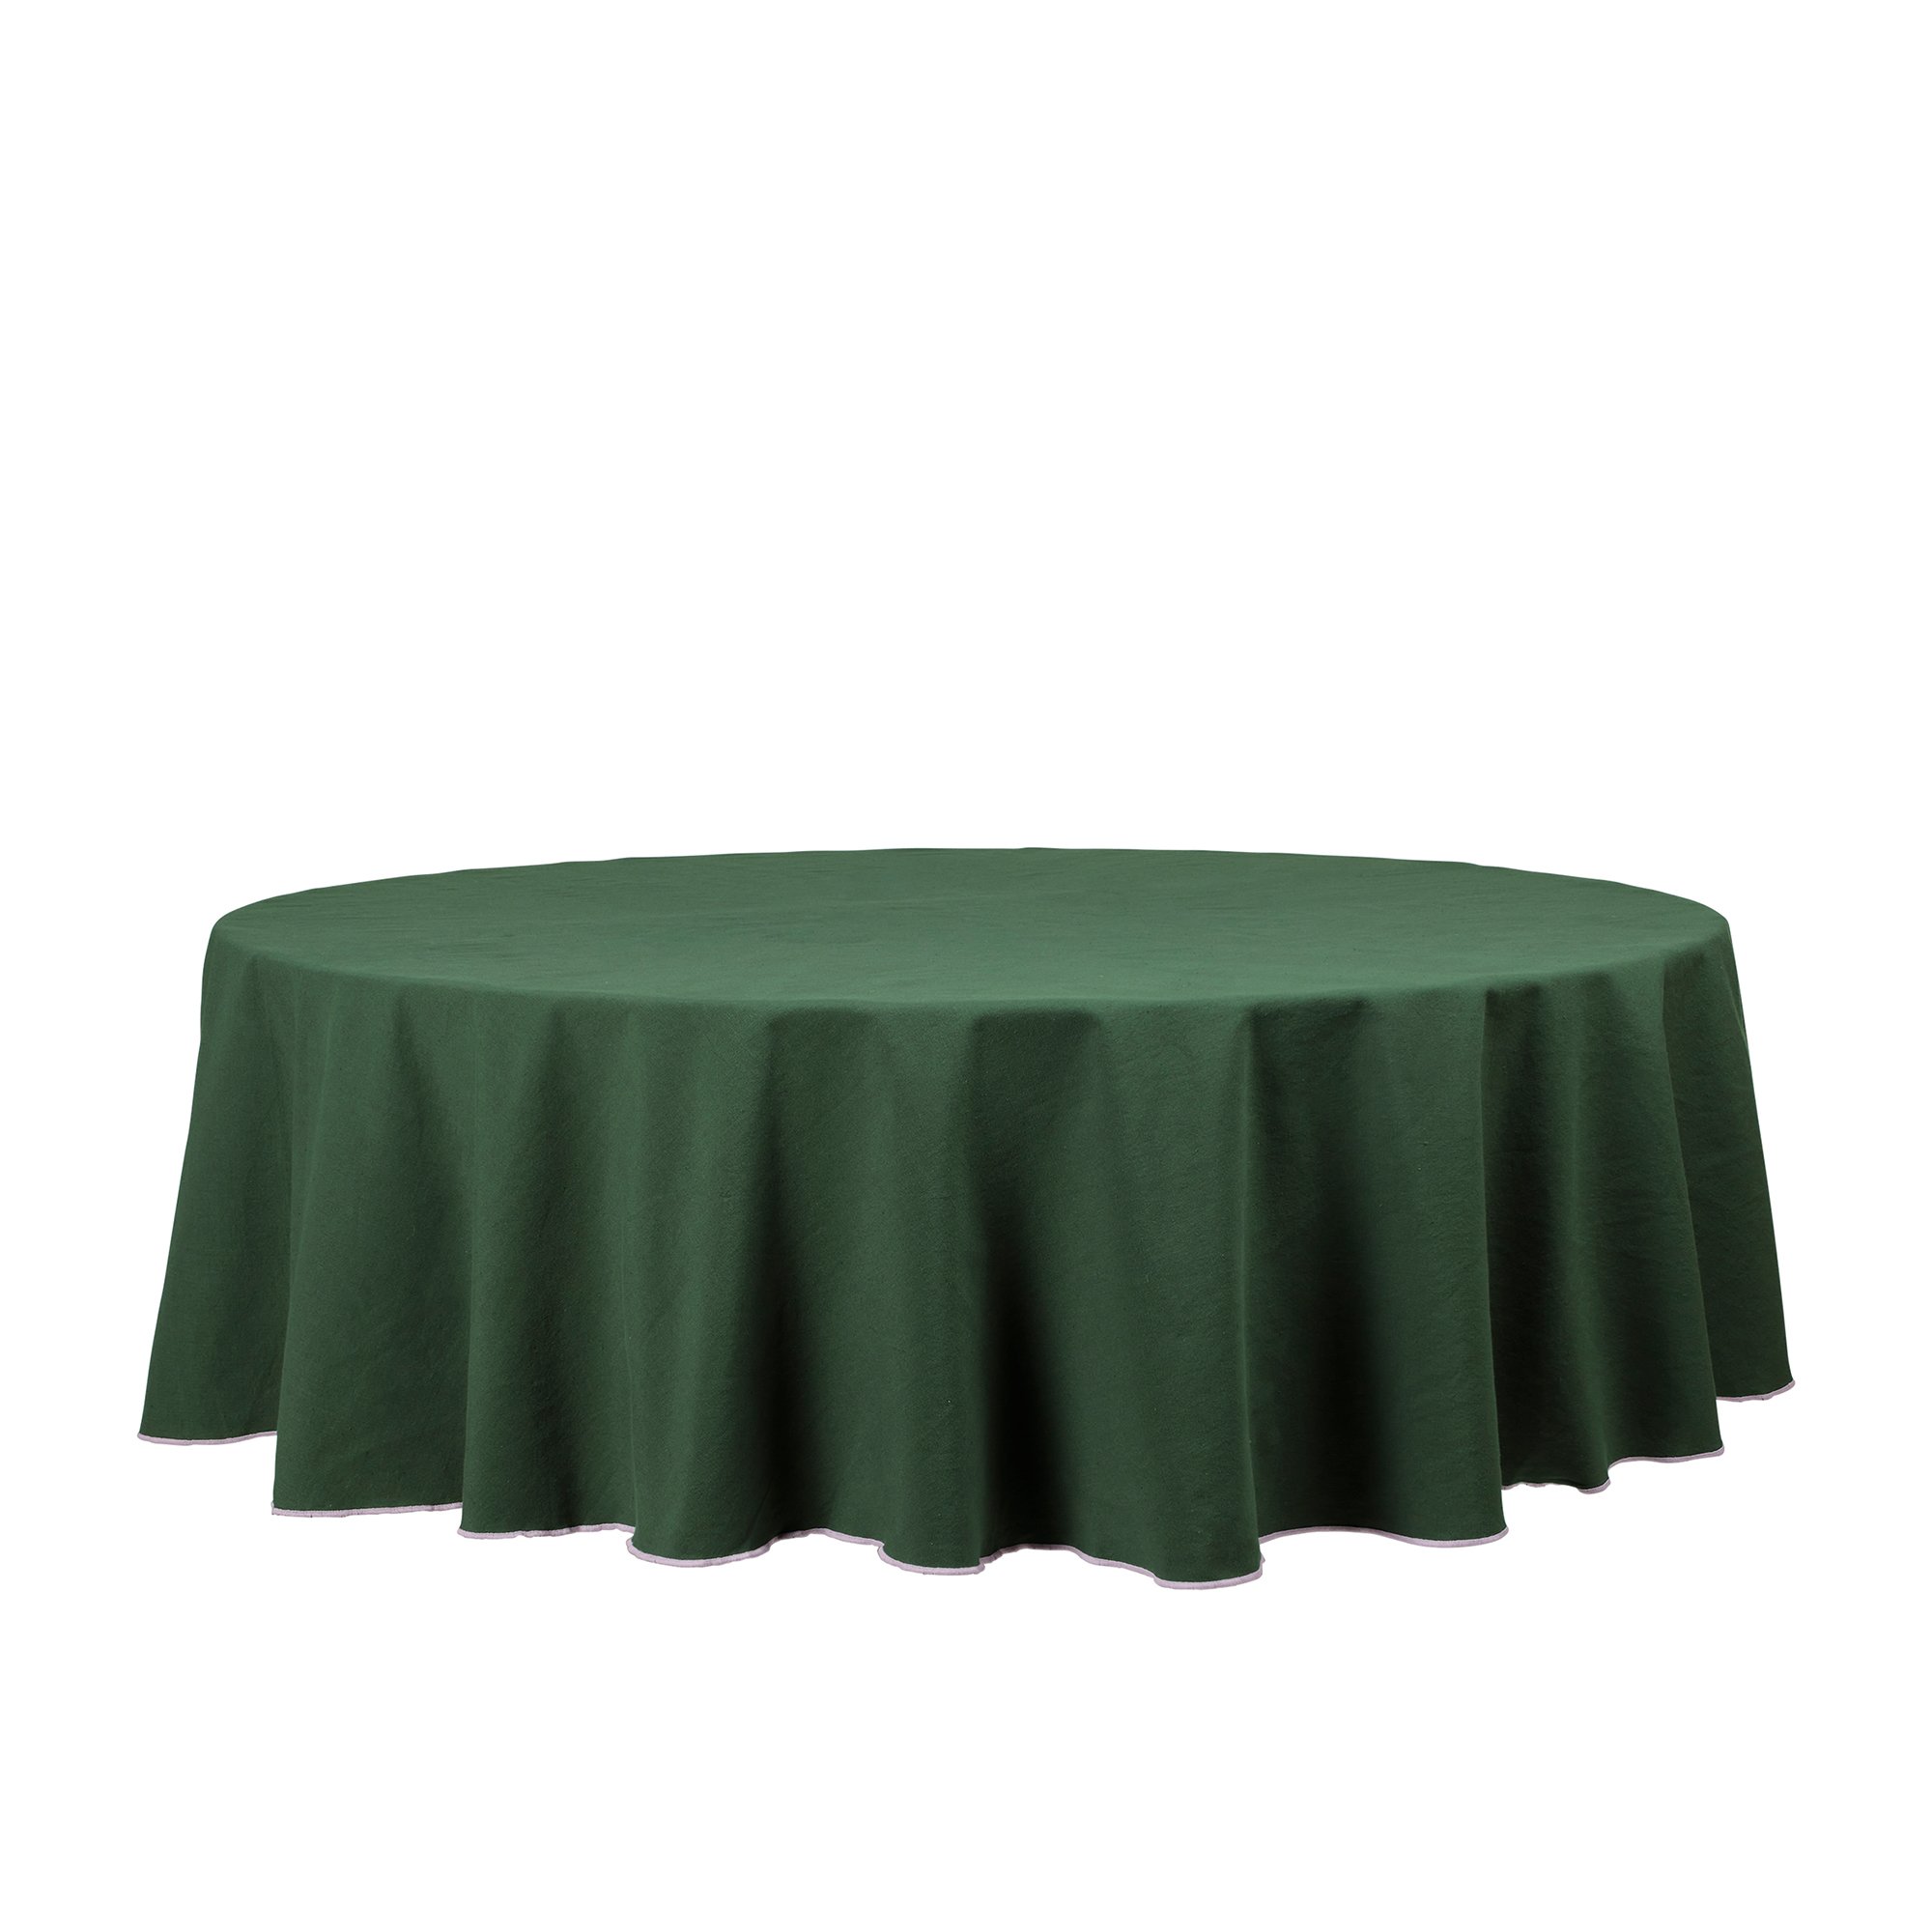 Produktfoto för Broste Copenhagen Wilhelmina bordsduk 200 cm, grön